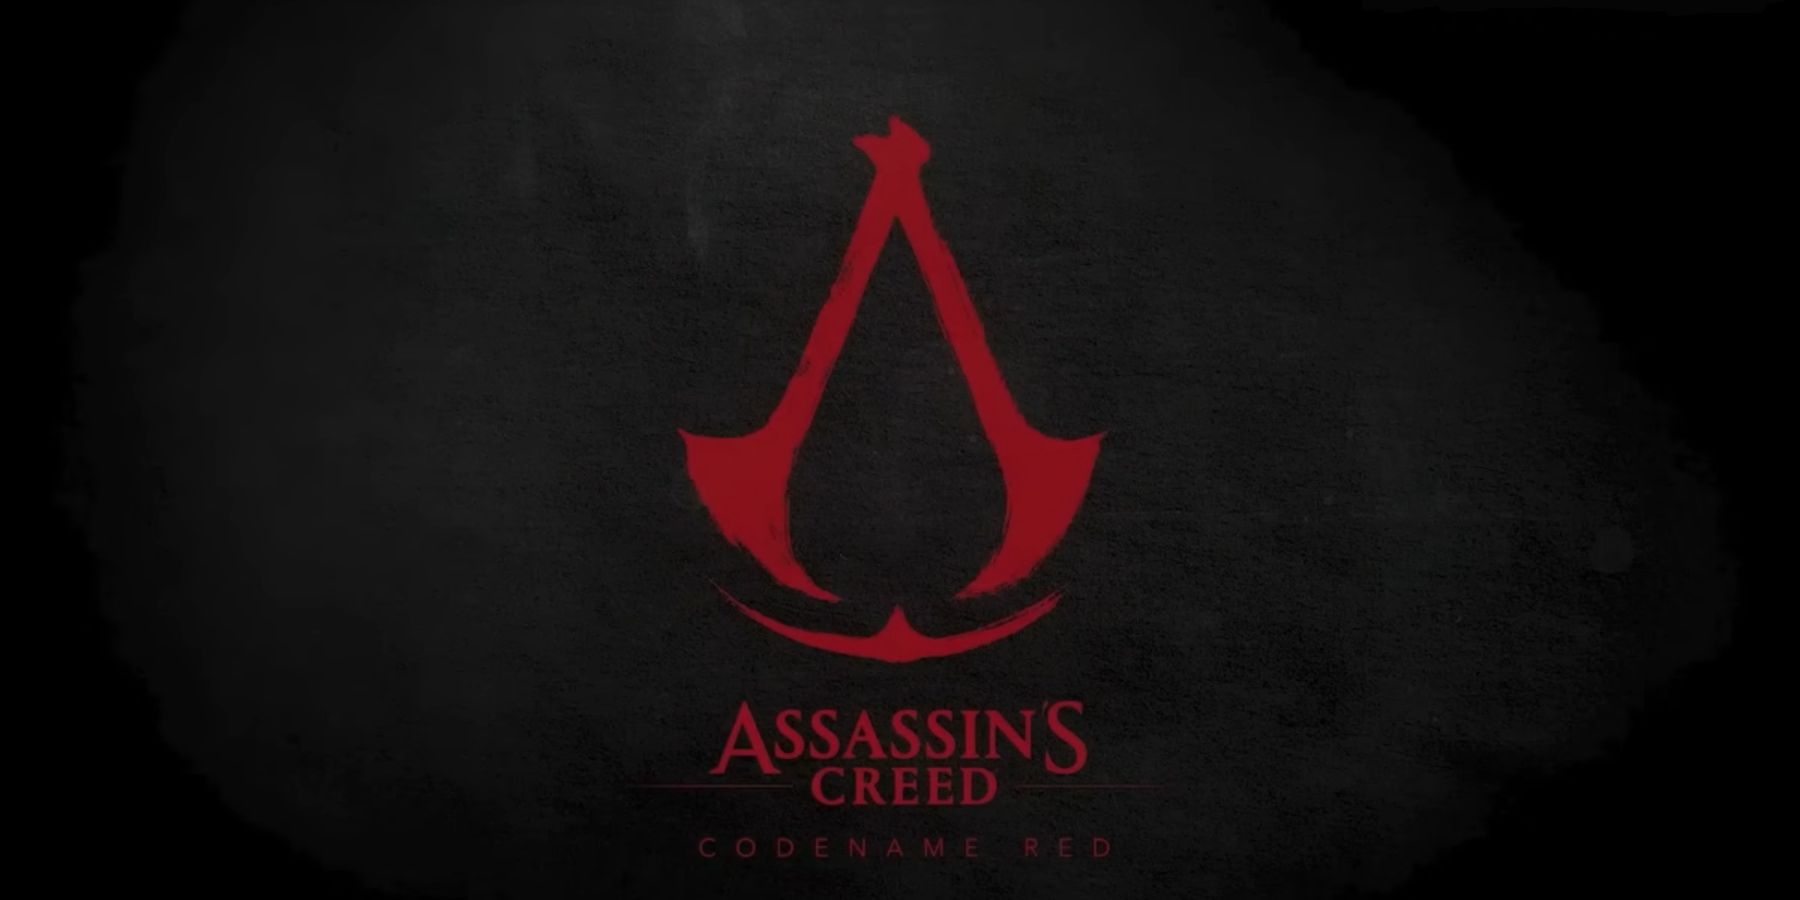 Ubisoft- ის თანამშრომელი აცხადებს, რომ დეველოპერებმა დატოვეს კომპანია Assassin’s Creed Red Director- ის გამო